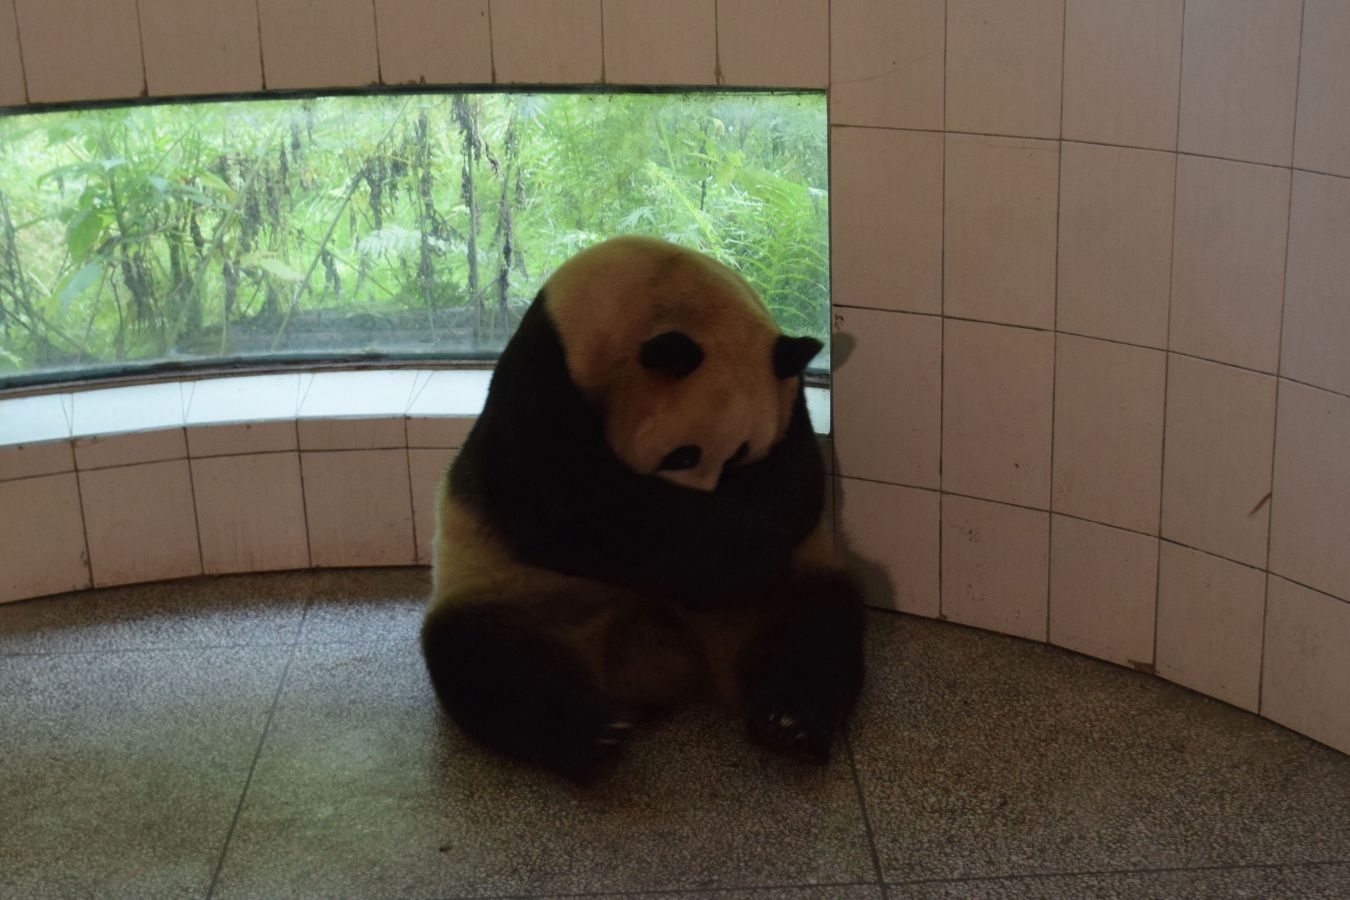 El bebé panda pesó 216 gramos, sobrepasando el peso habitual que suele ser de 150 gramos para esta especie, gracias al buen apetito de su madre 'Cao Cao' durante el embarazo